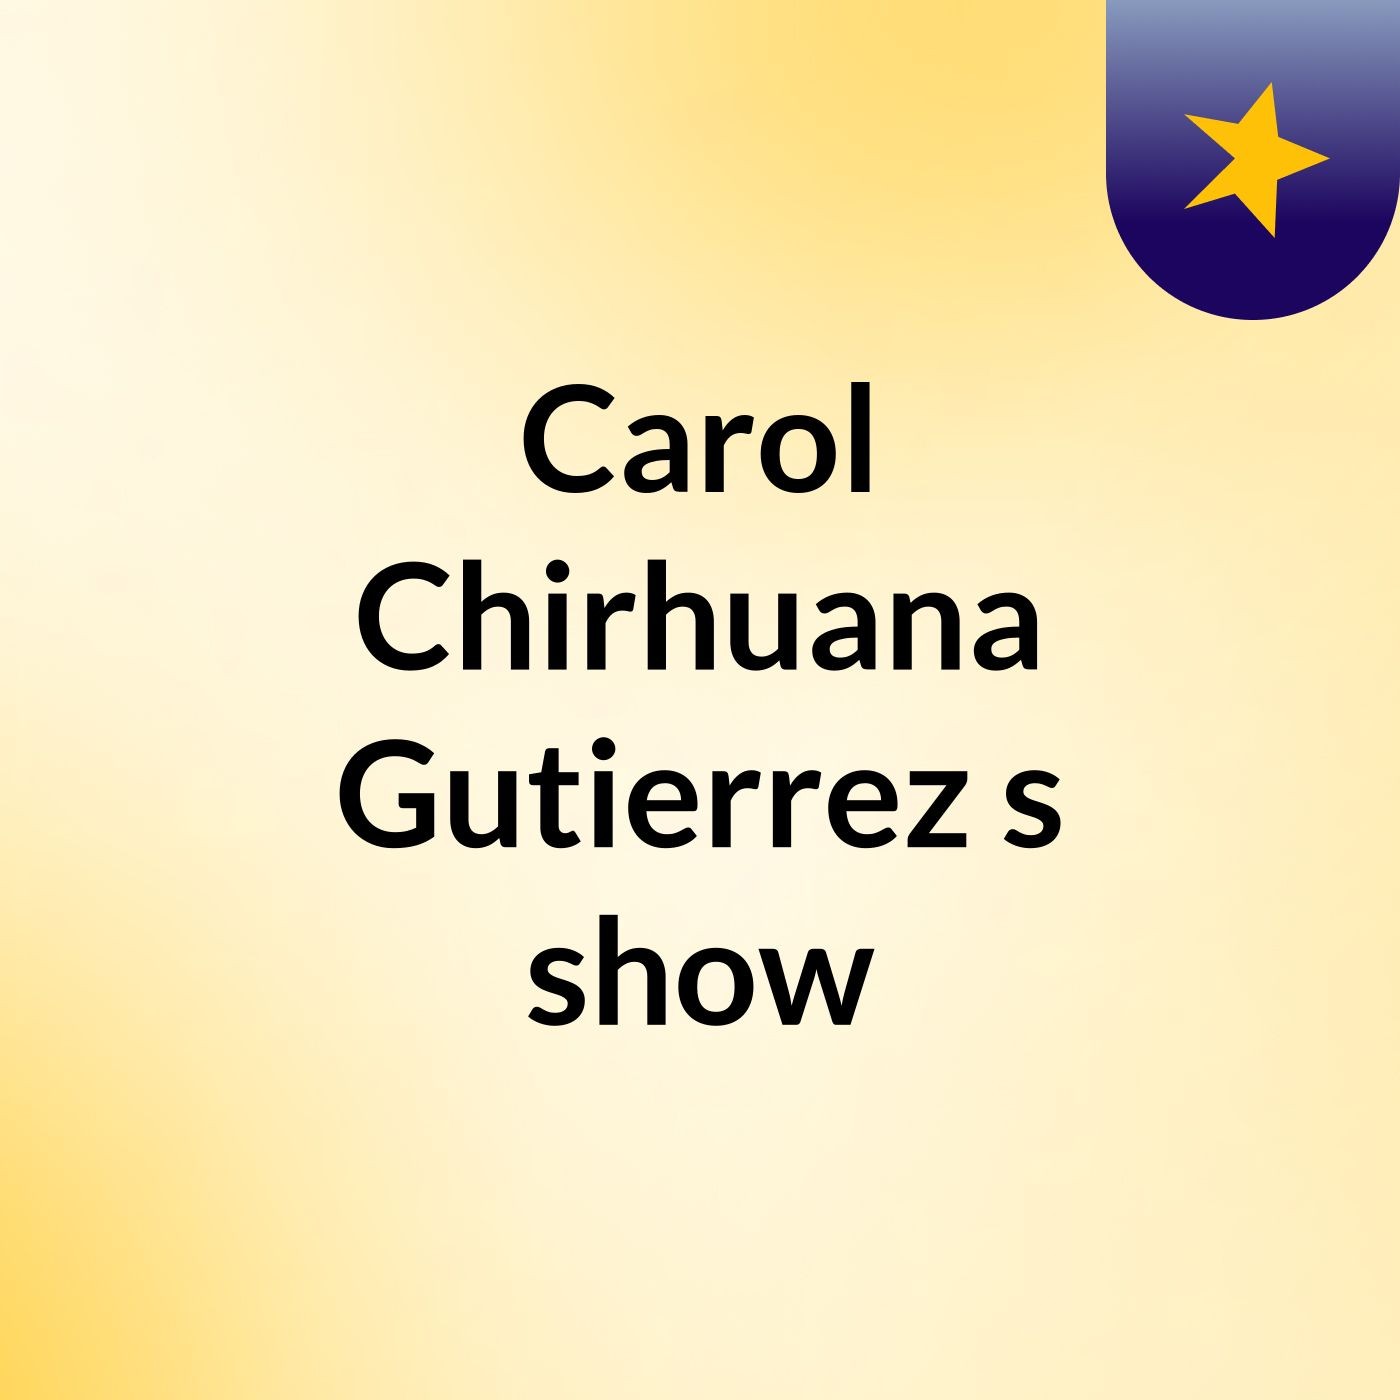 Carol Chirhuana Gutierrez's show